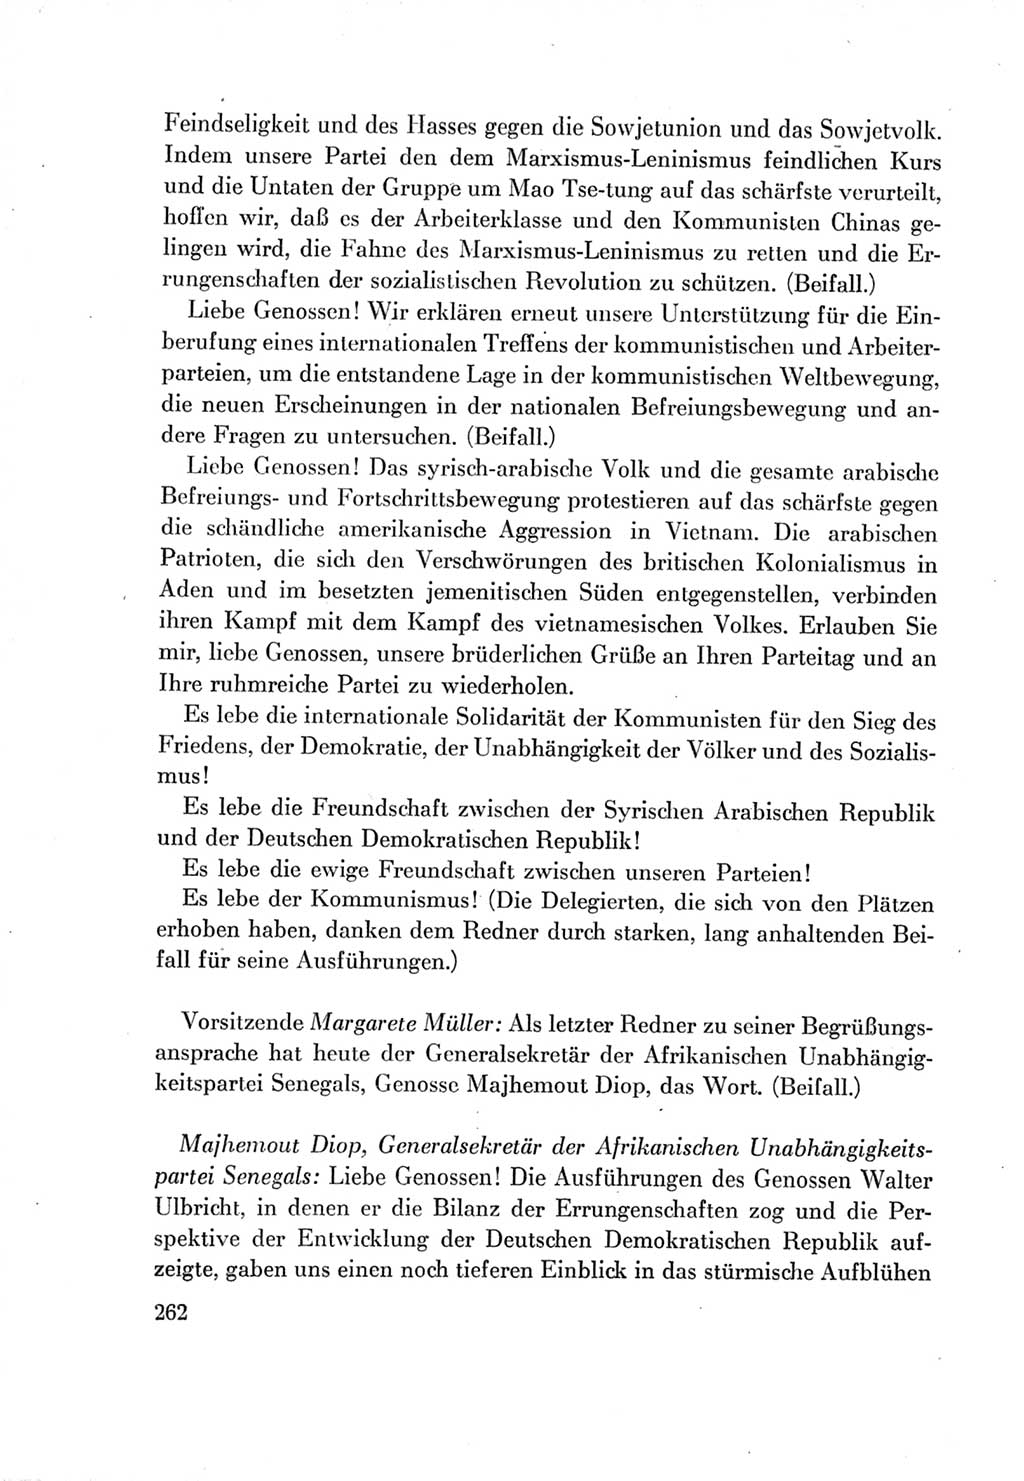 Protokoll der Verhandlungen des Ⅶ. Parteitages der Sozialistischen Einheitspartei Deutschlands (SED) [Deutsche Demokratische Republik (DDR)] 1967, Band Ⅱ, Seite 262 (Prot. Verh. Ⅶ. PT SED DDR 1967, Bd. Ⅱ, S. 262)